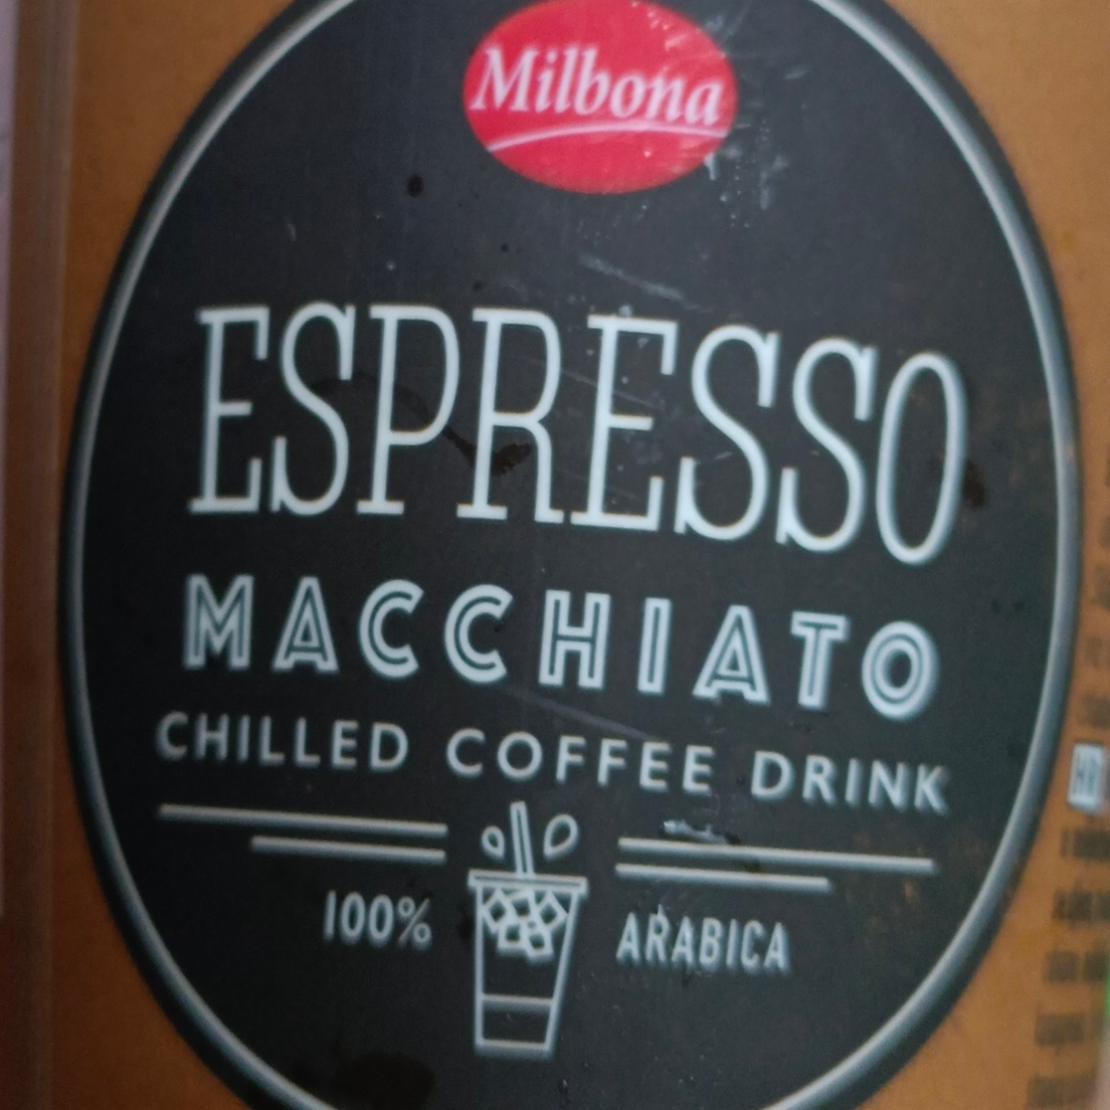 Fotografie - Espresso Macchiato chilled coffee drink Milbona